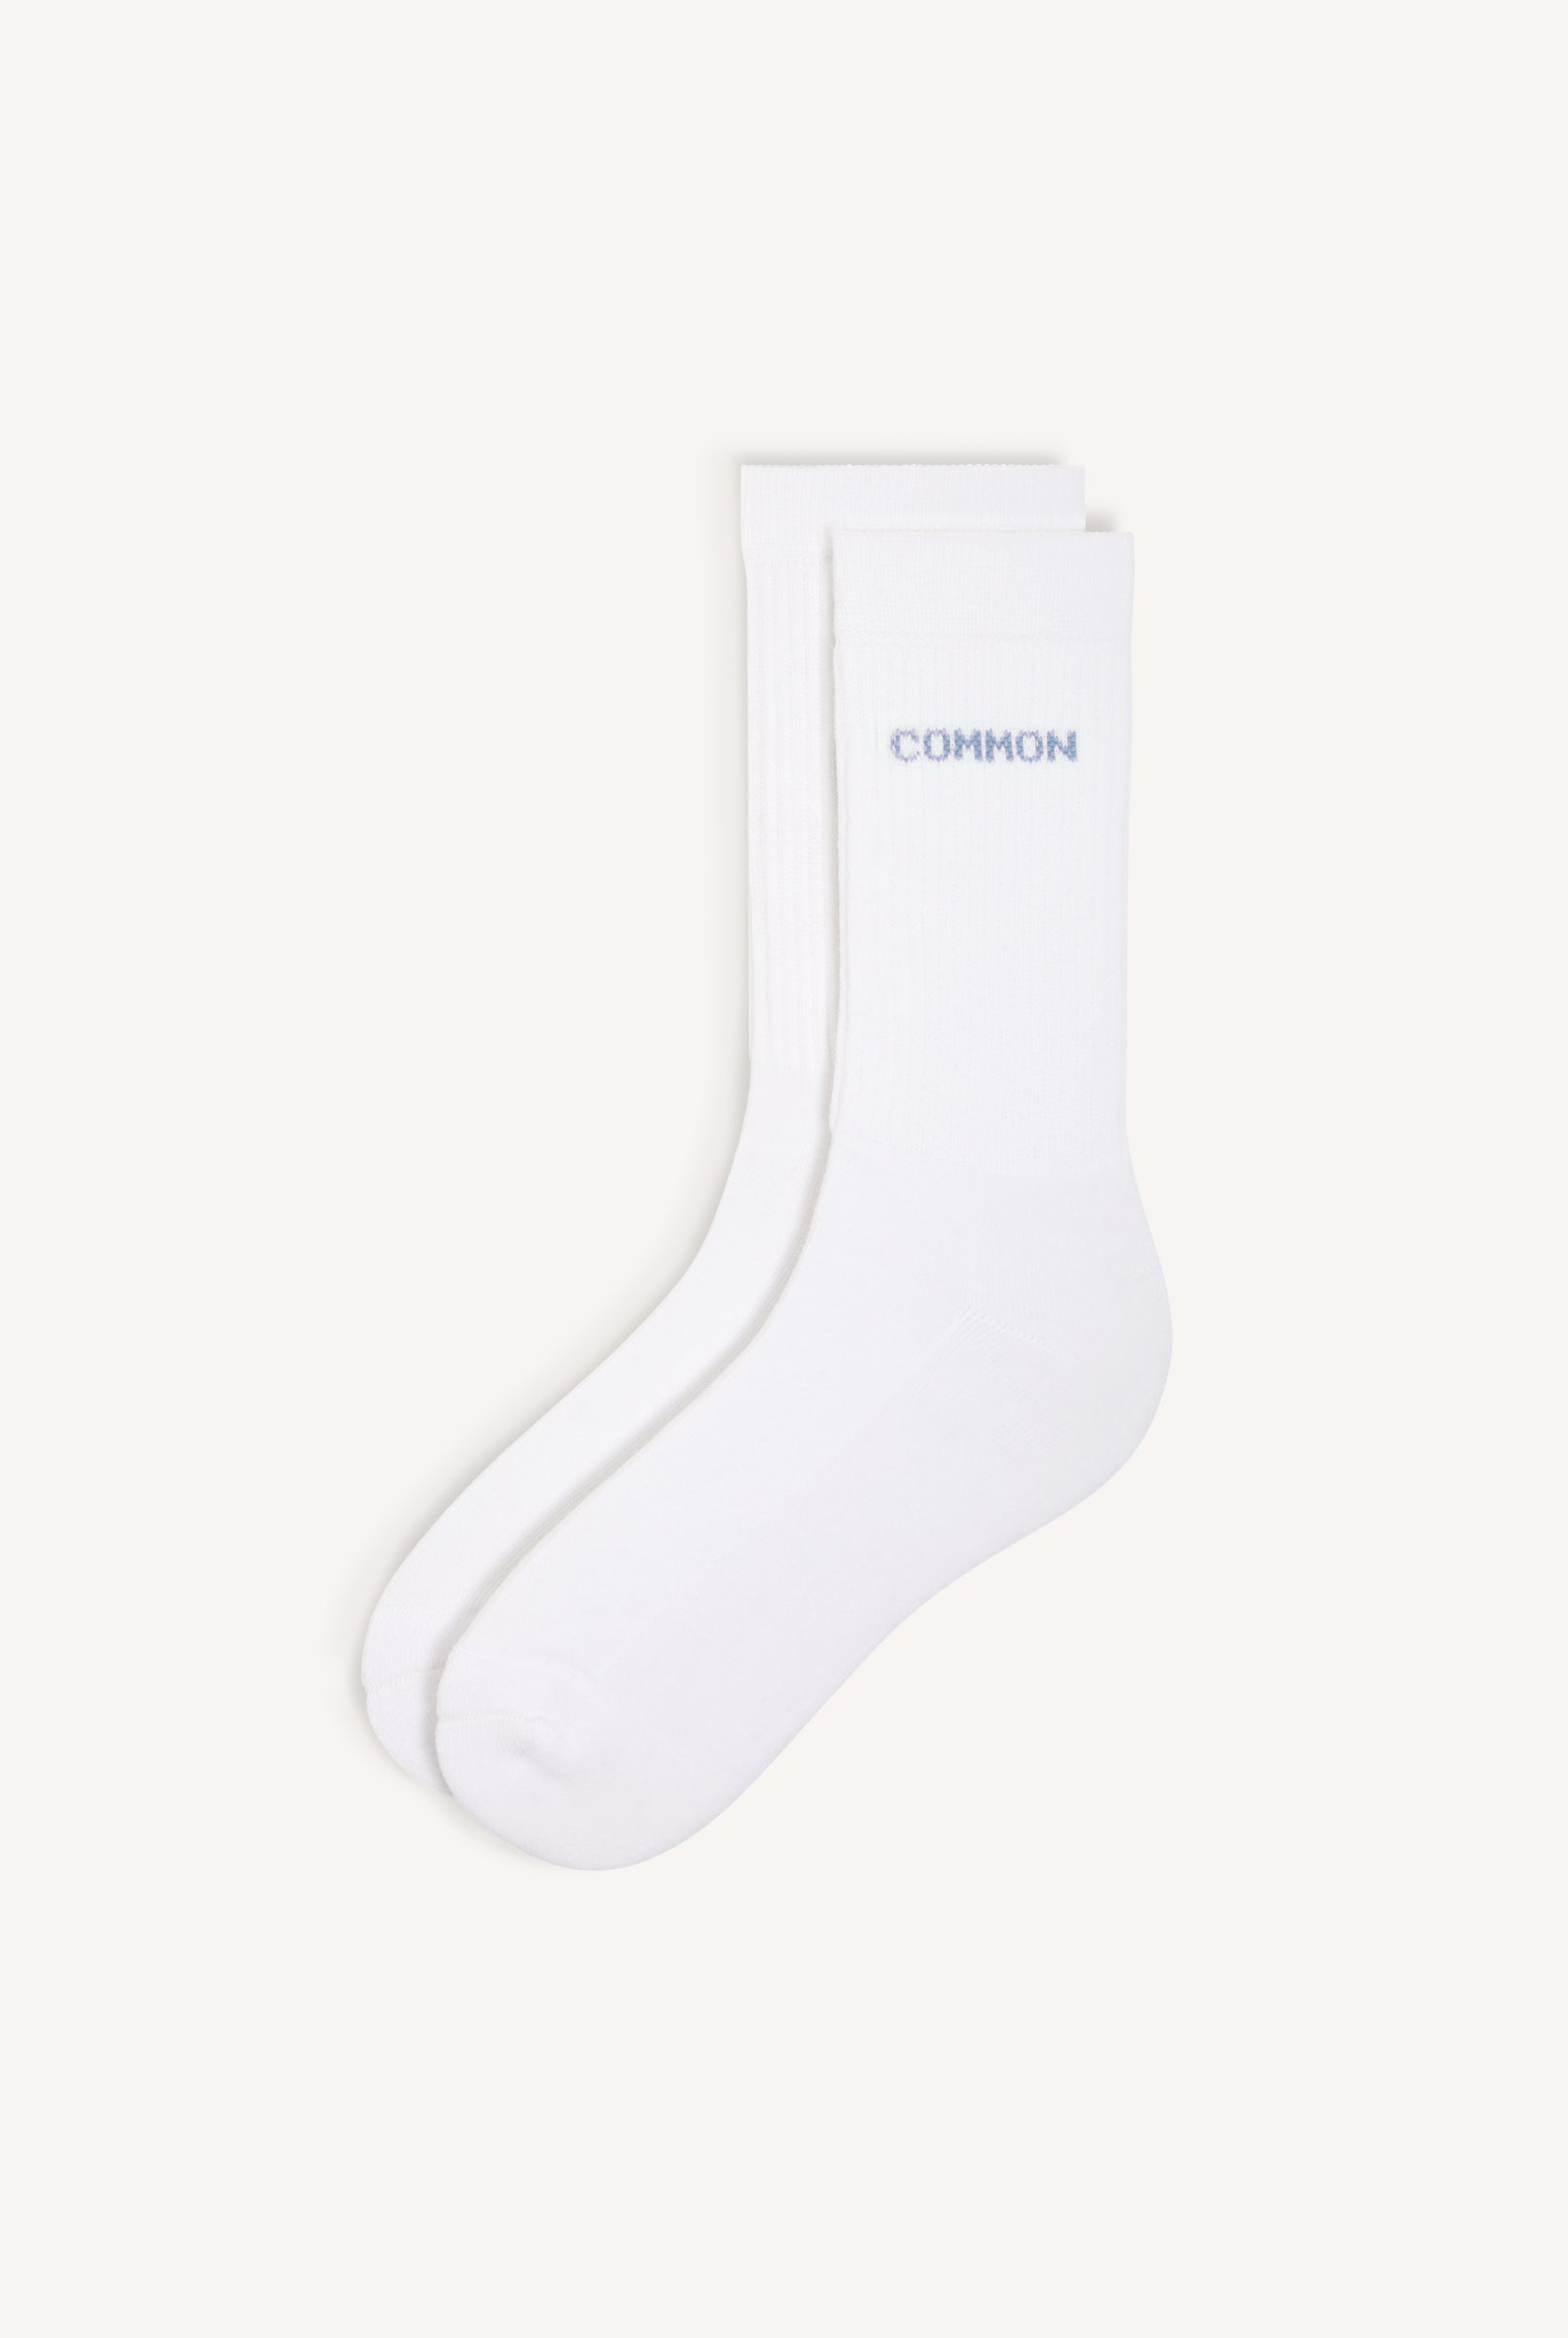 Pack of 2 Common Socks